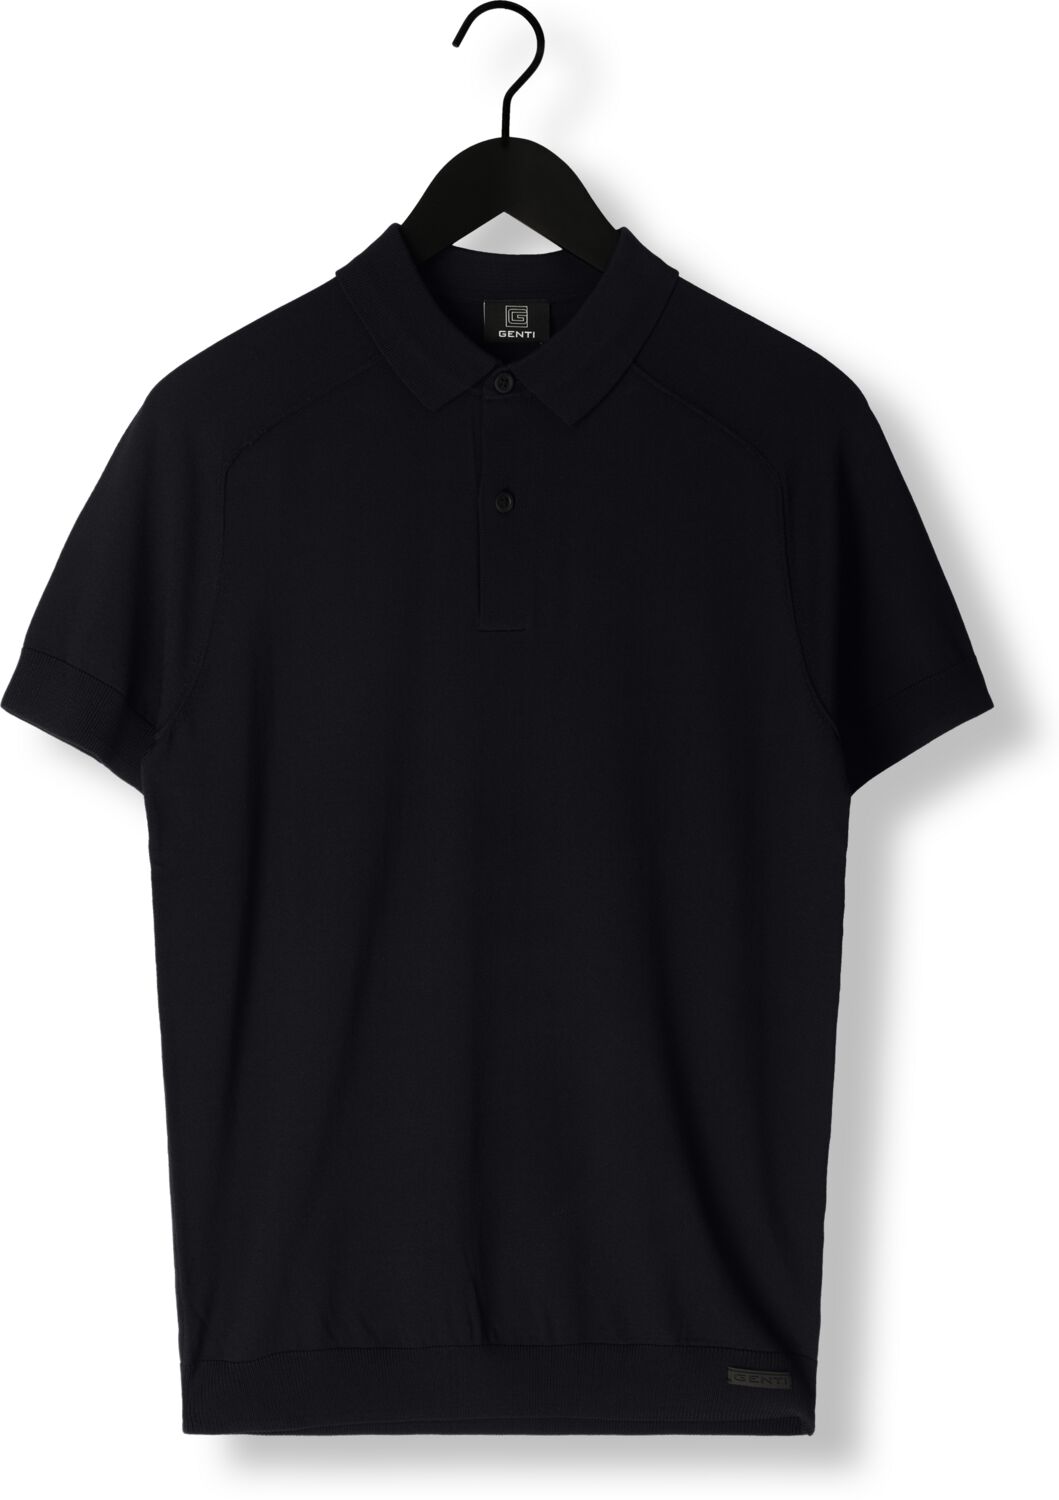 GENTI Heren Polo's & T-shirts K9116-1260 Donkerblauw